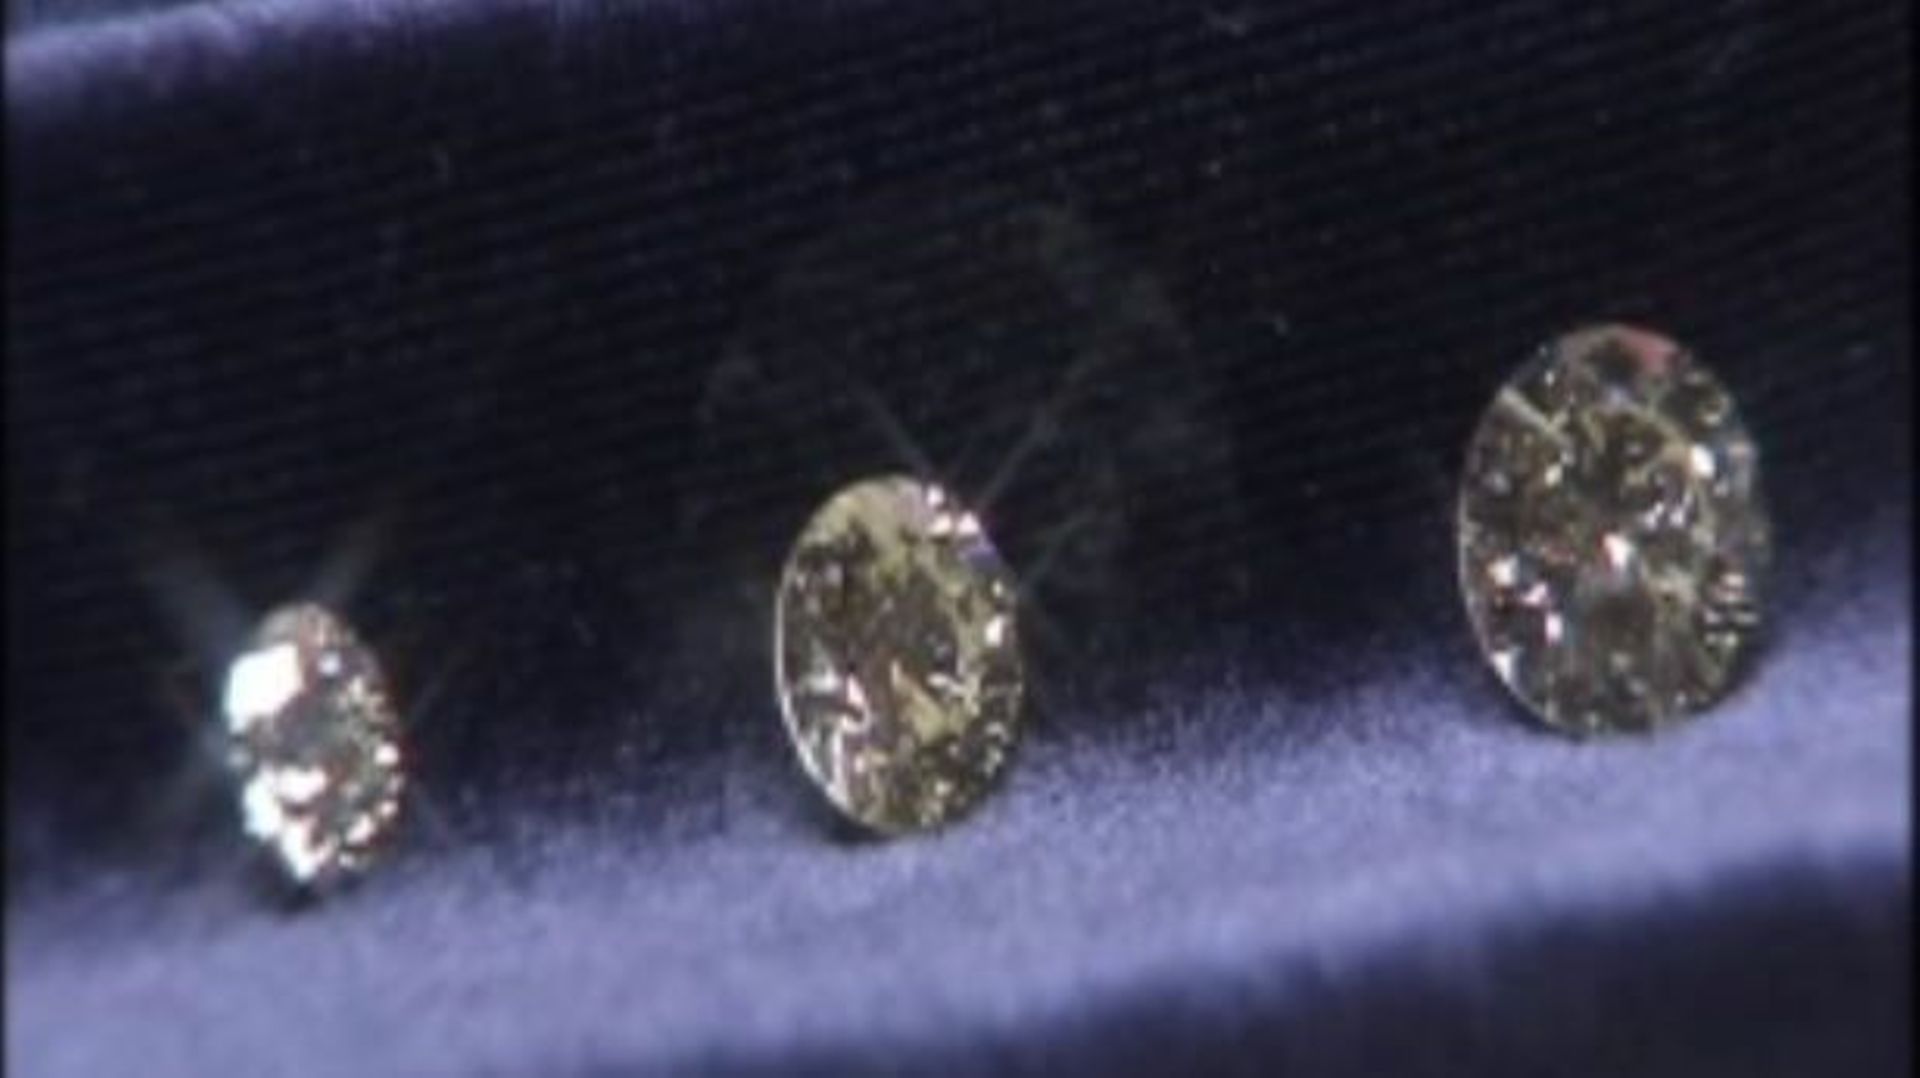 La Belgique démissionnaire face à la fraude de certains diamantaires?